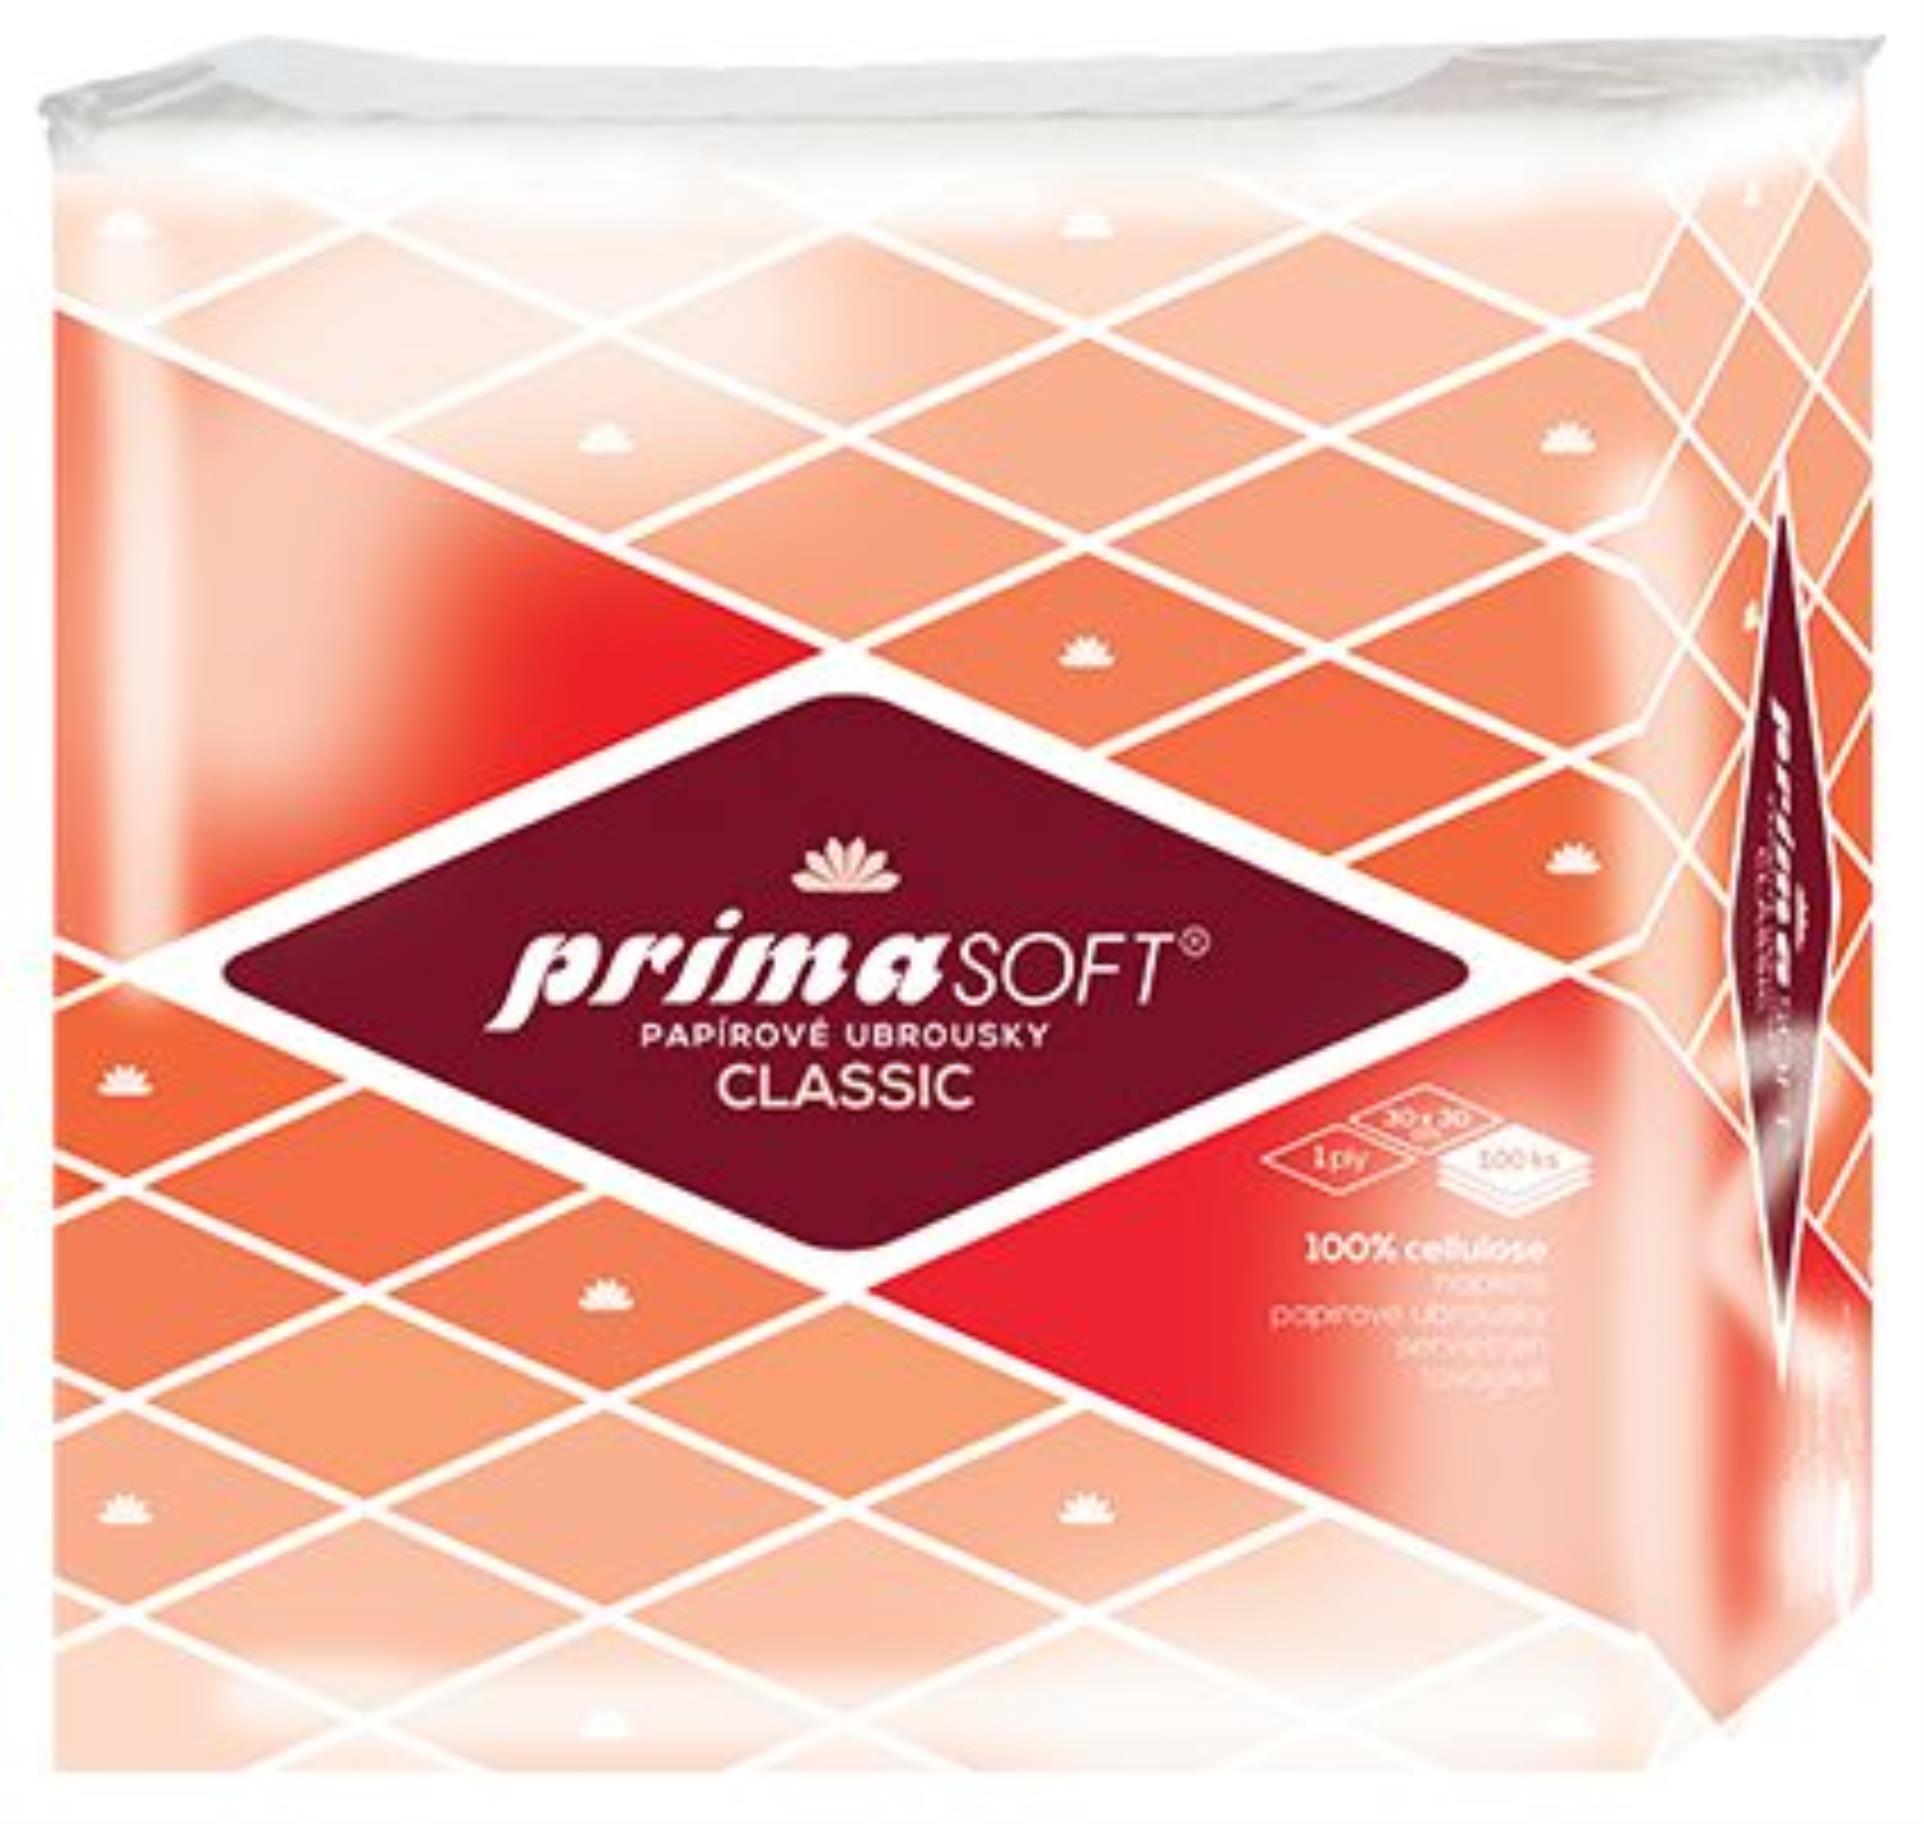 Papírové ubrousky Primasoft jednovrstvé, bílé, 100 ks